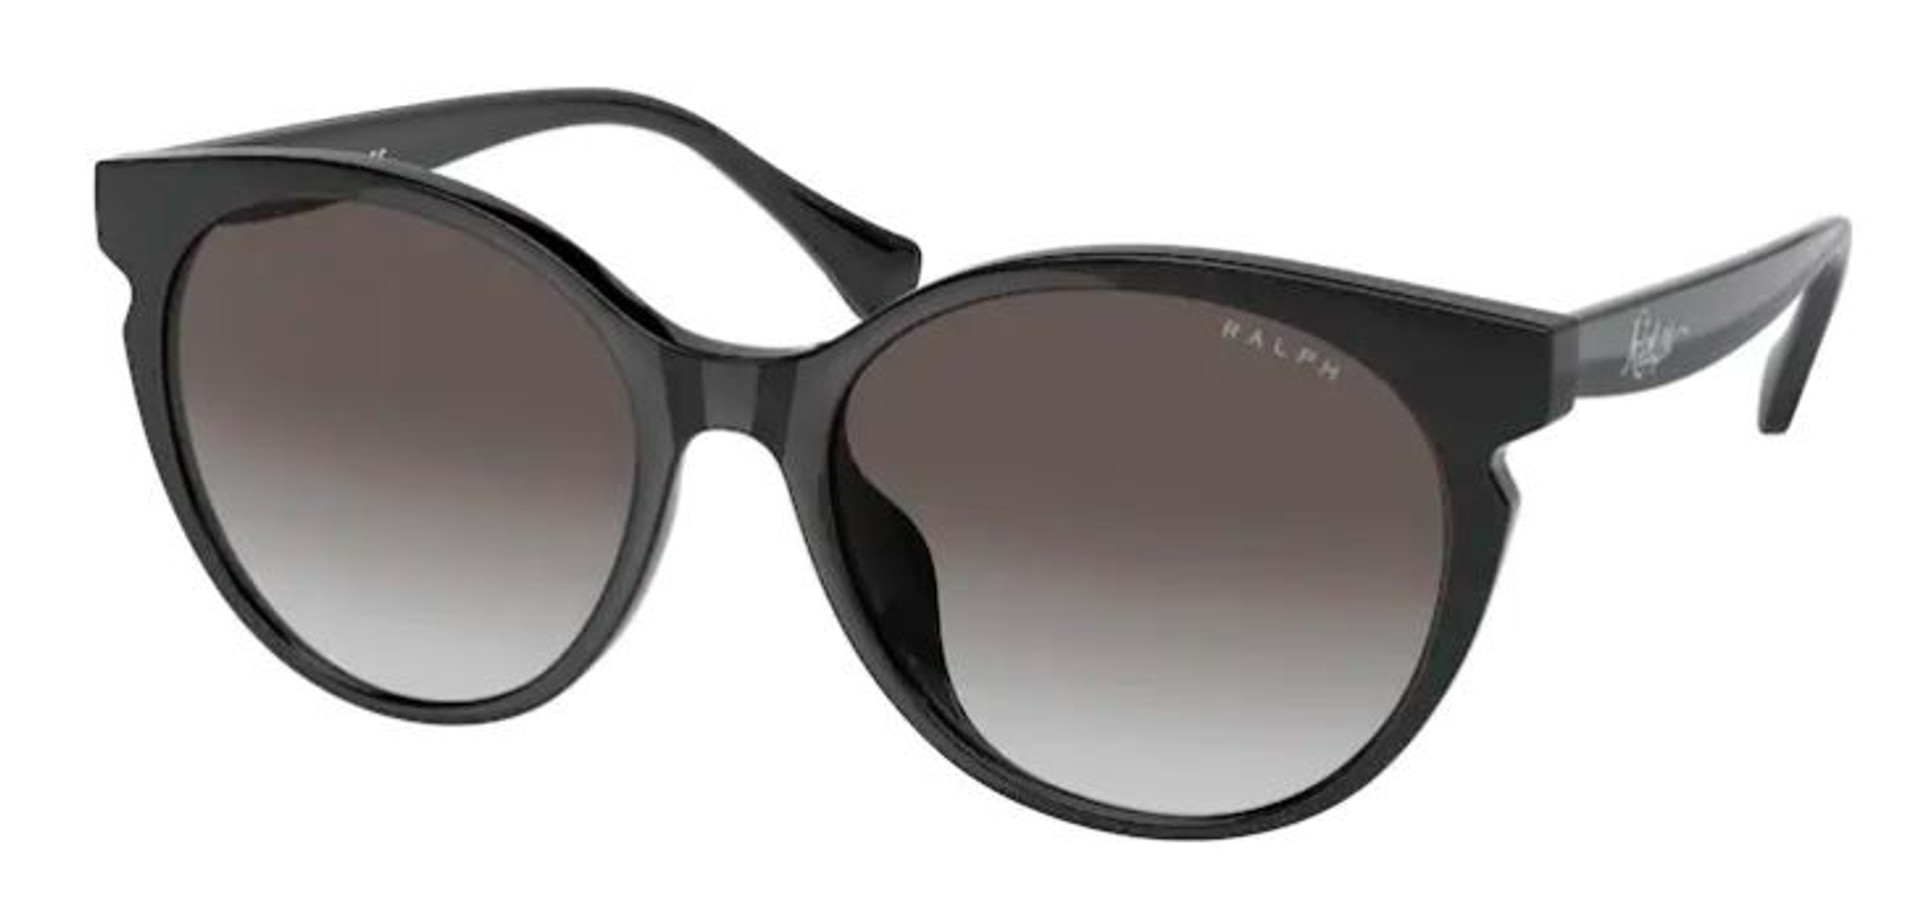 Shop Sunglasses | Prescription Sunglasses Online | WebEyeCare